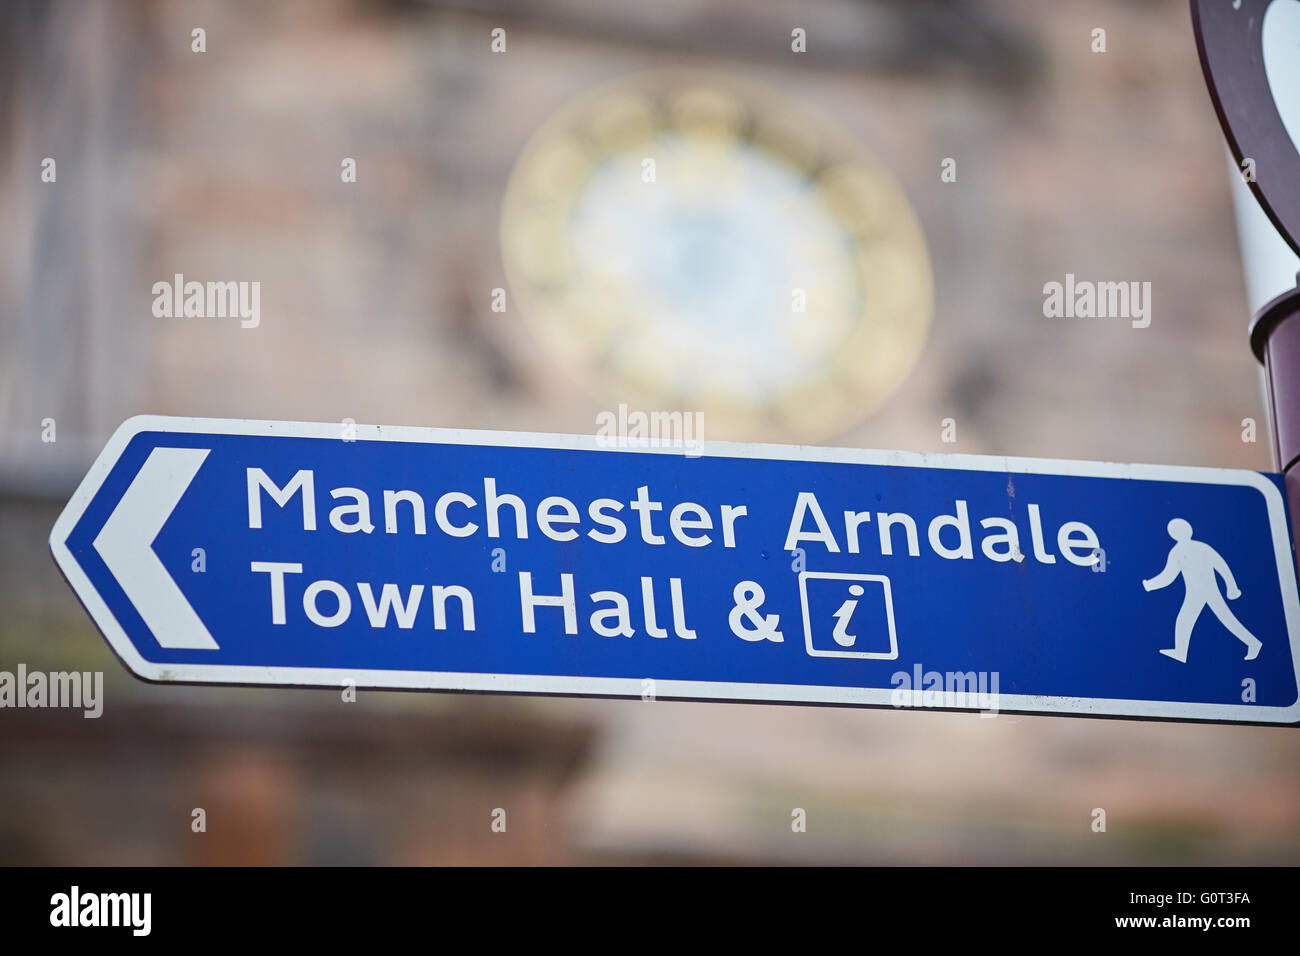 Manchester ARNDALE Rathaus blaue Fußgänger Zeichen Ziel zeigt ST ANNS SQUARE Kirche Uhr Informationen Stockfoto